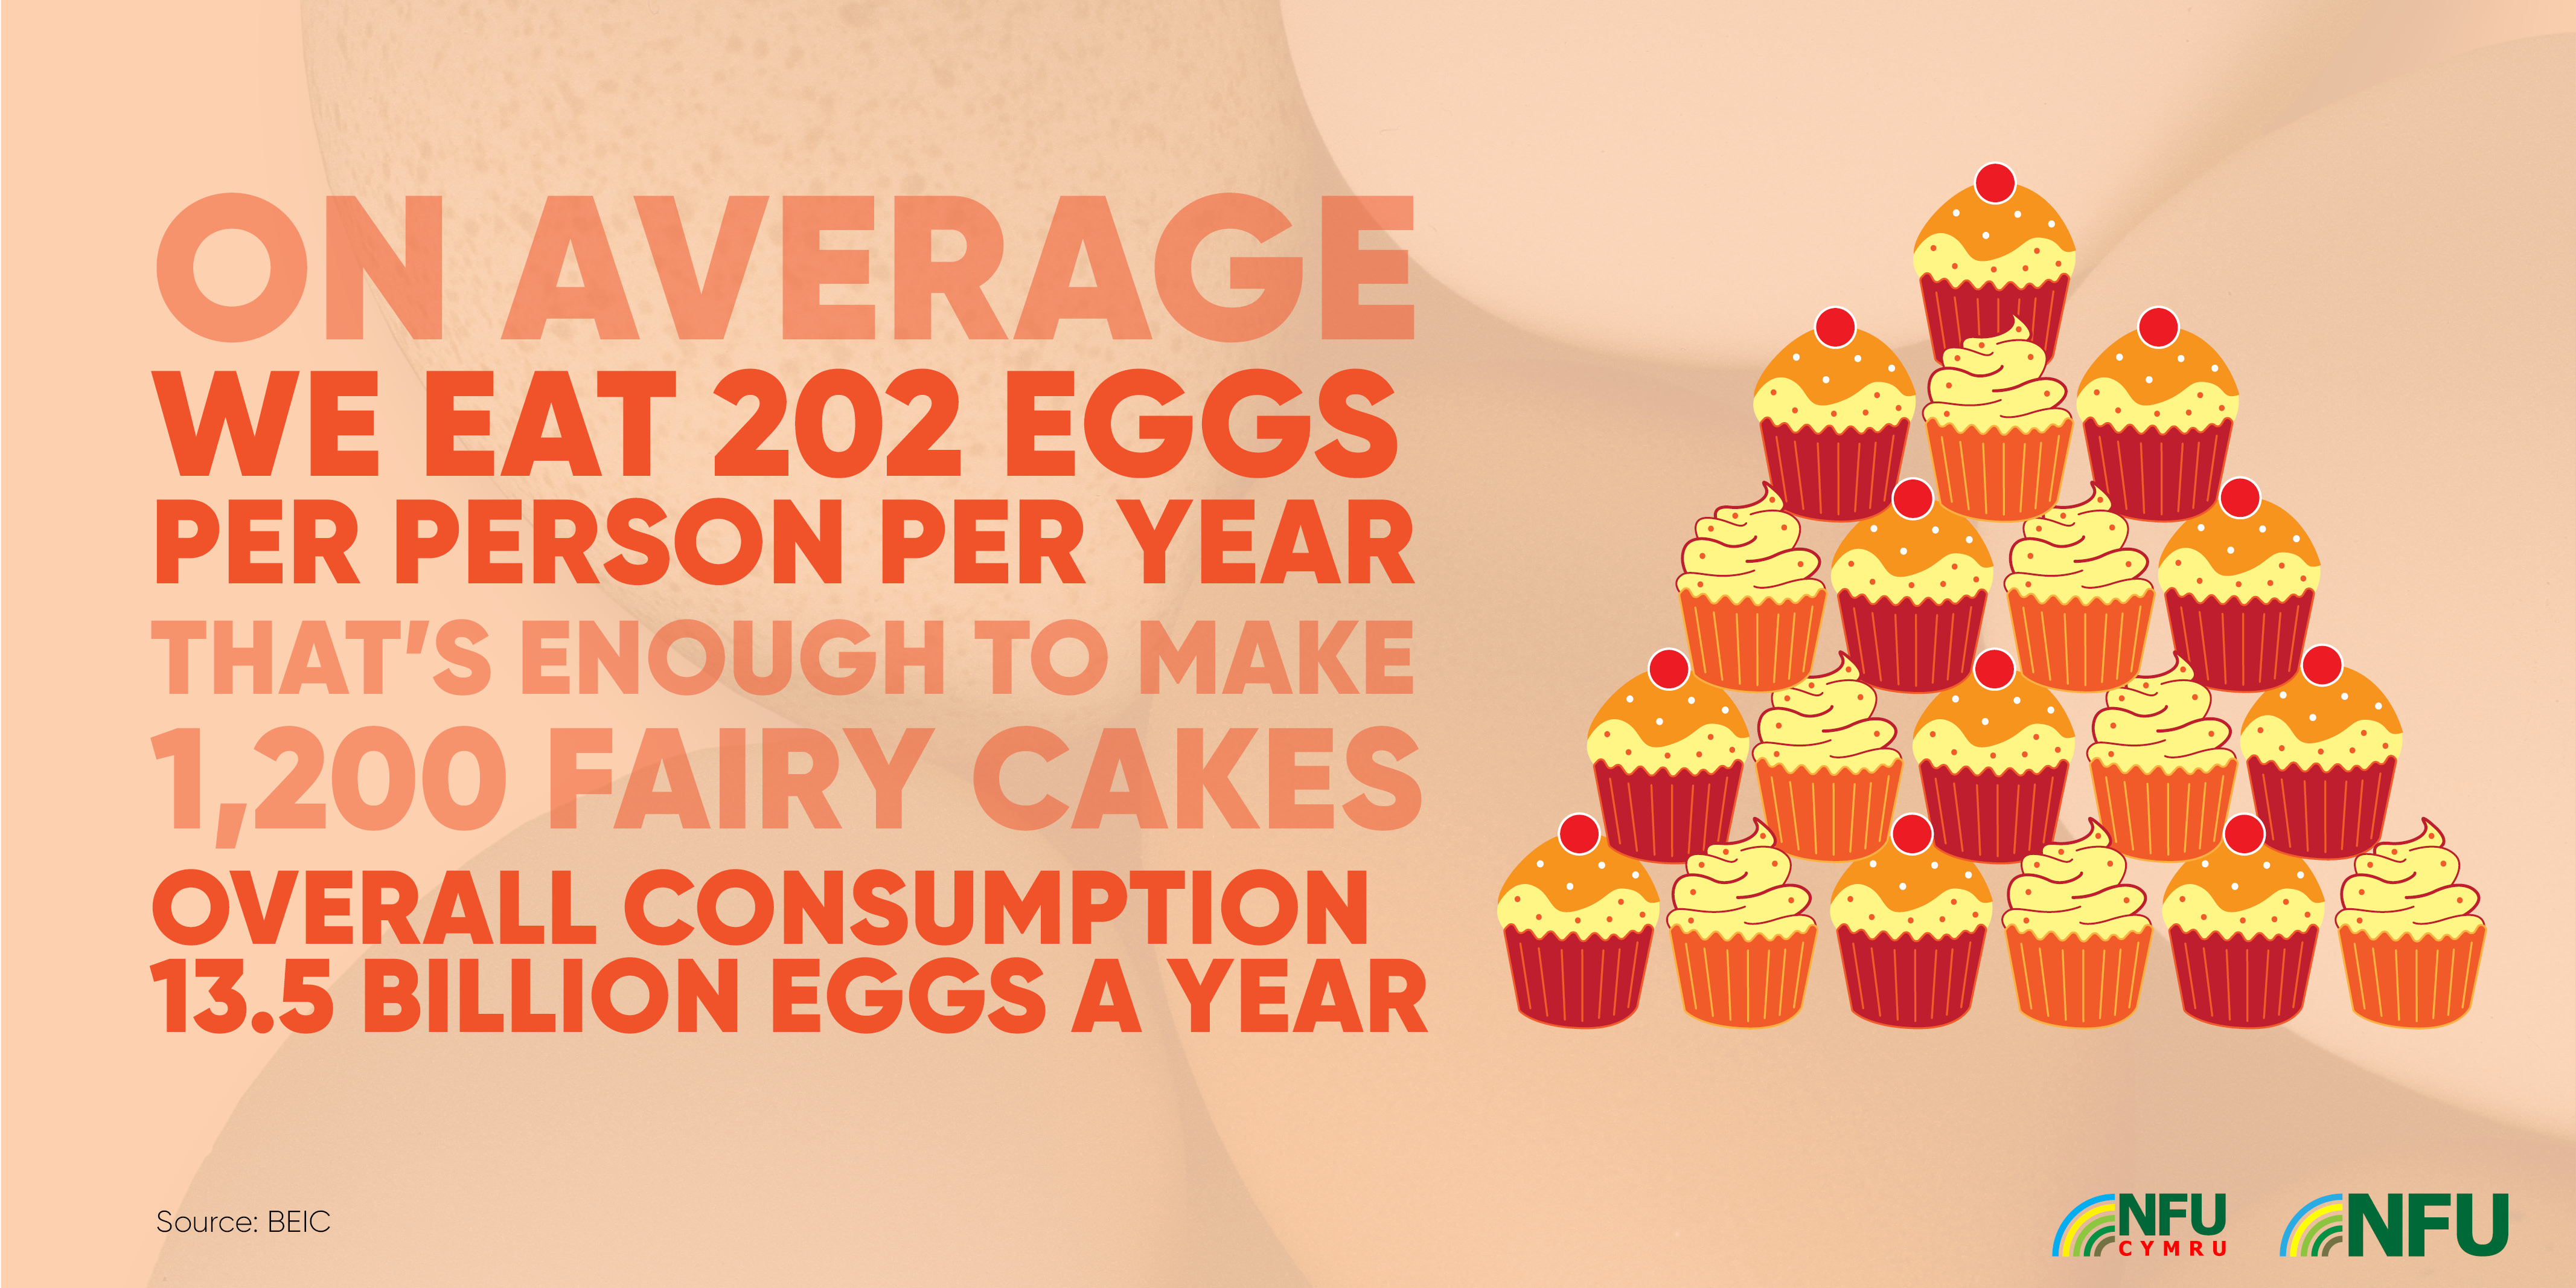 On average we eat 202 eggs